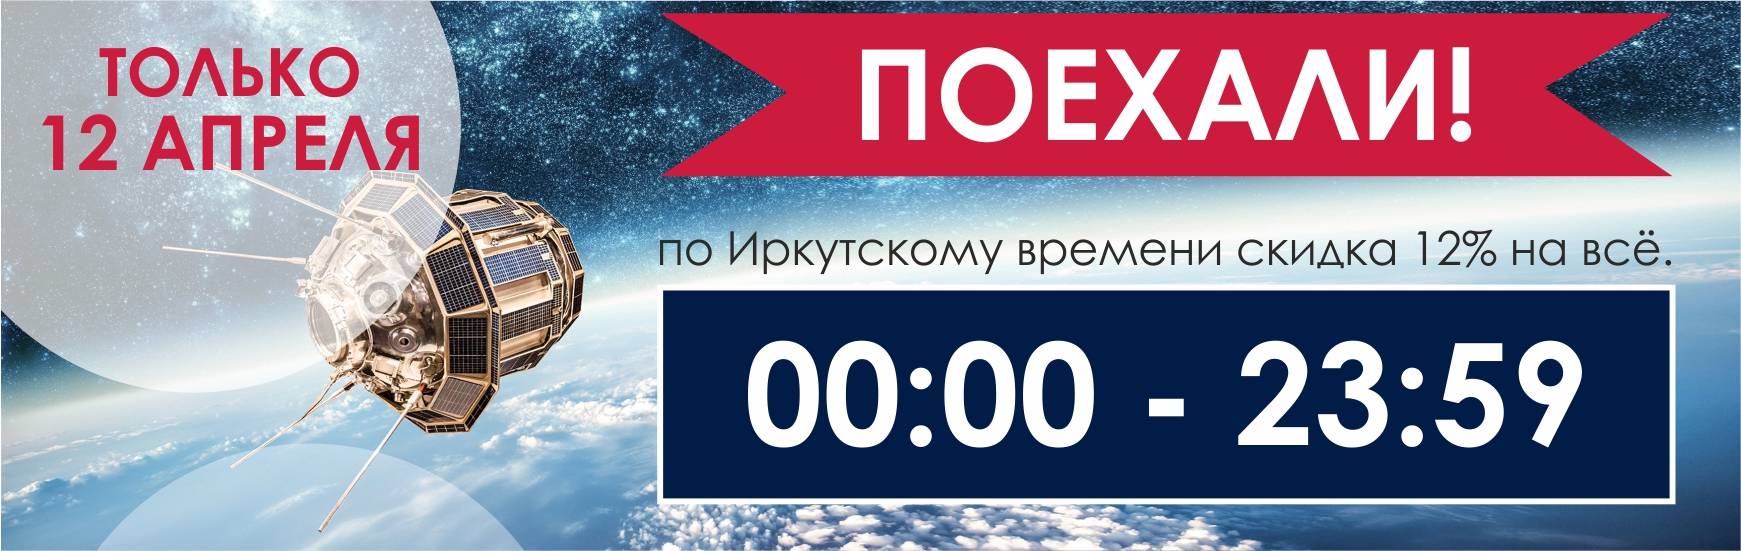 Время в иркутске с секундами